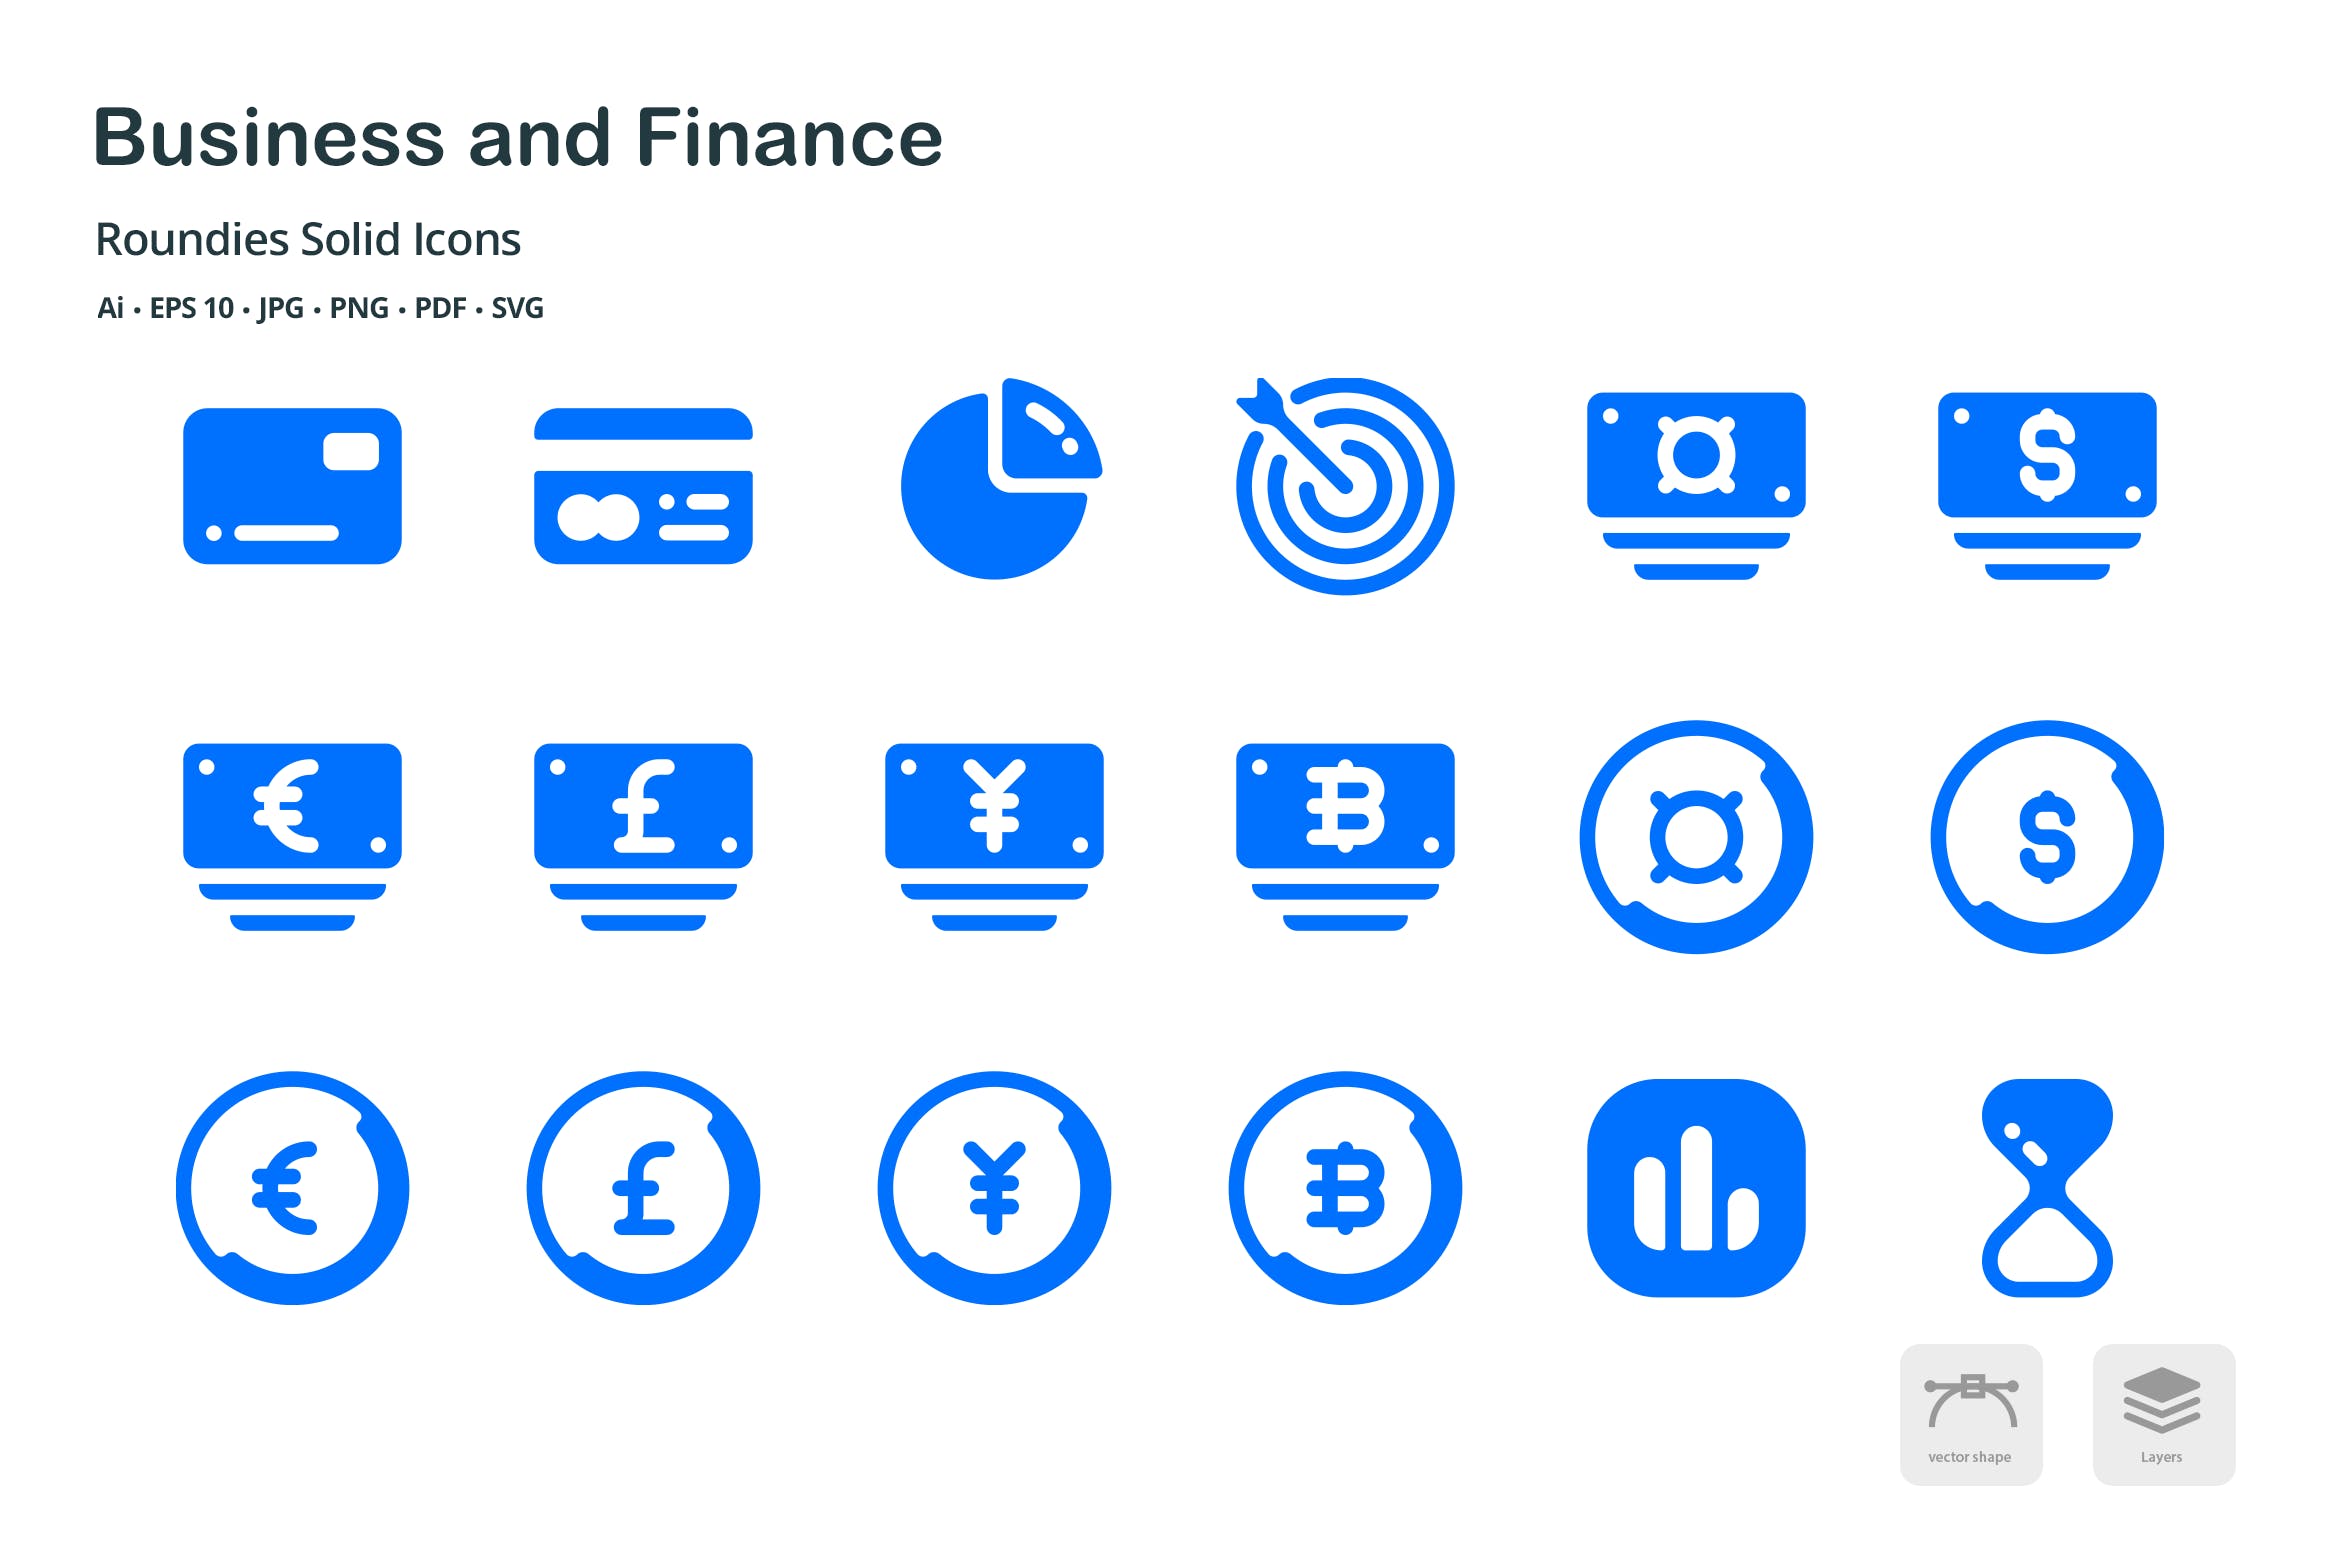 商业和金融圆形坚实的字形图标Business and Finance Roundies Solid Glyph Icons